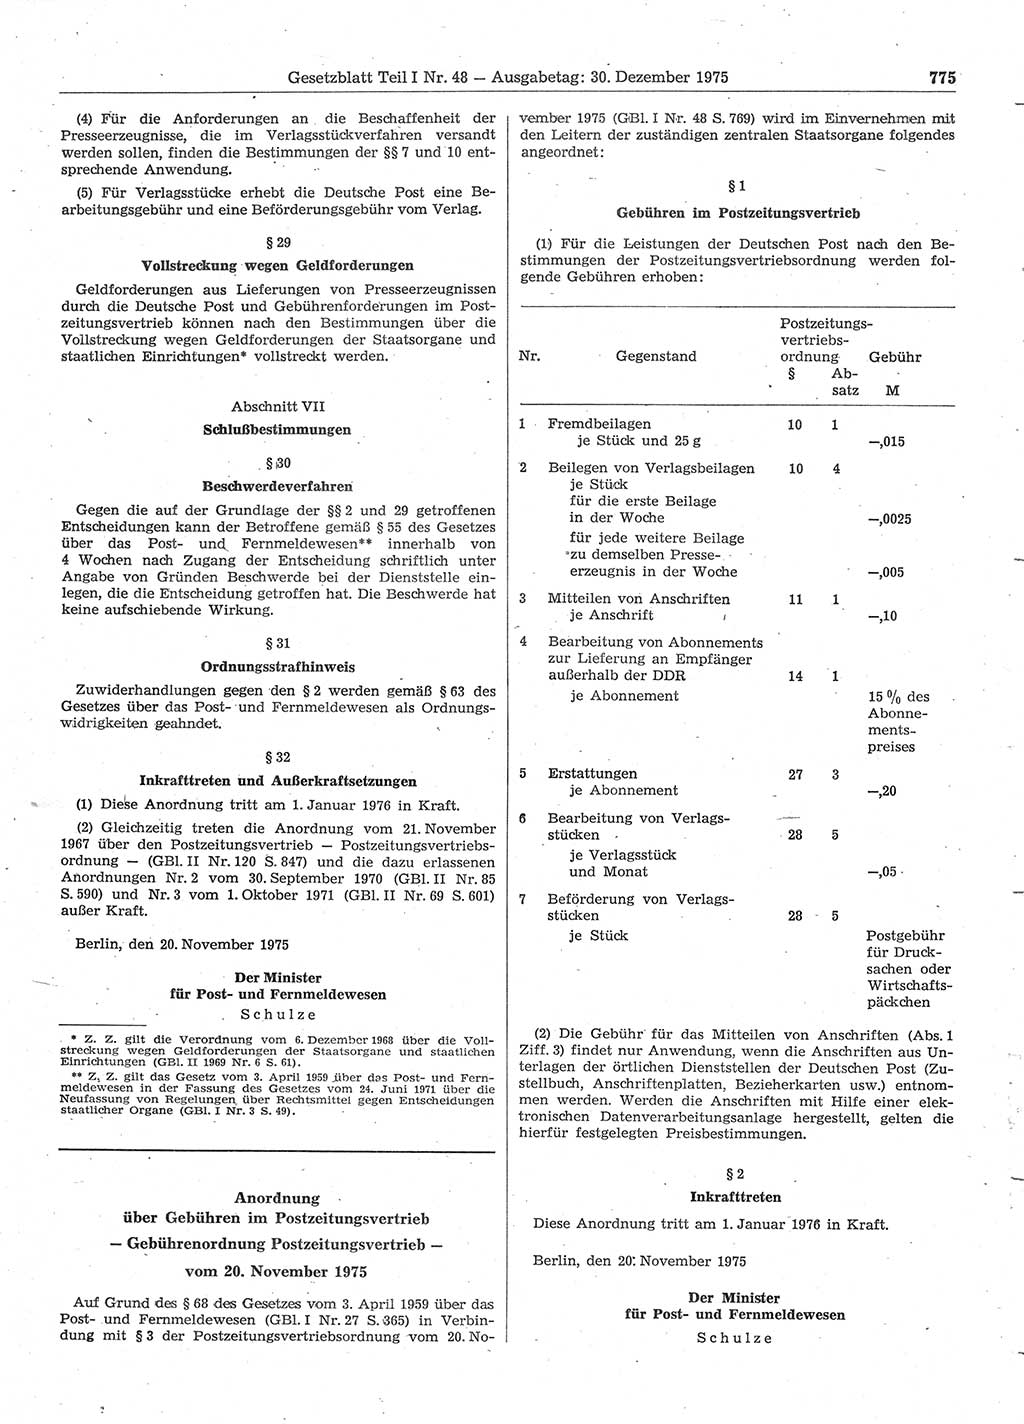 Gesetzblatt (GBl.) der Deutschen Demokratischen Republik (DDR) Teil Ⅰ 1975, Seite 775 (GBl. DDR Ⅰ 1975, S. 775)